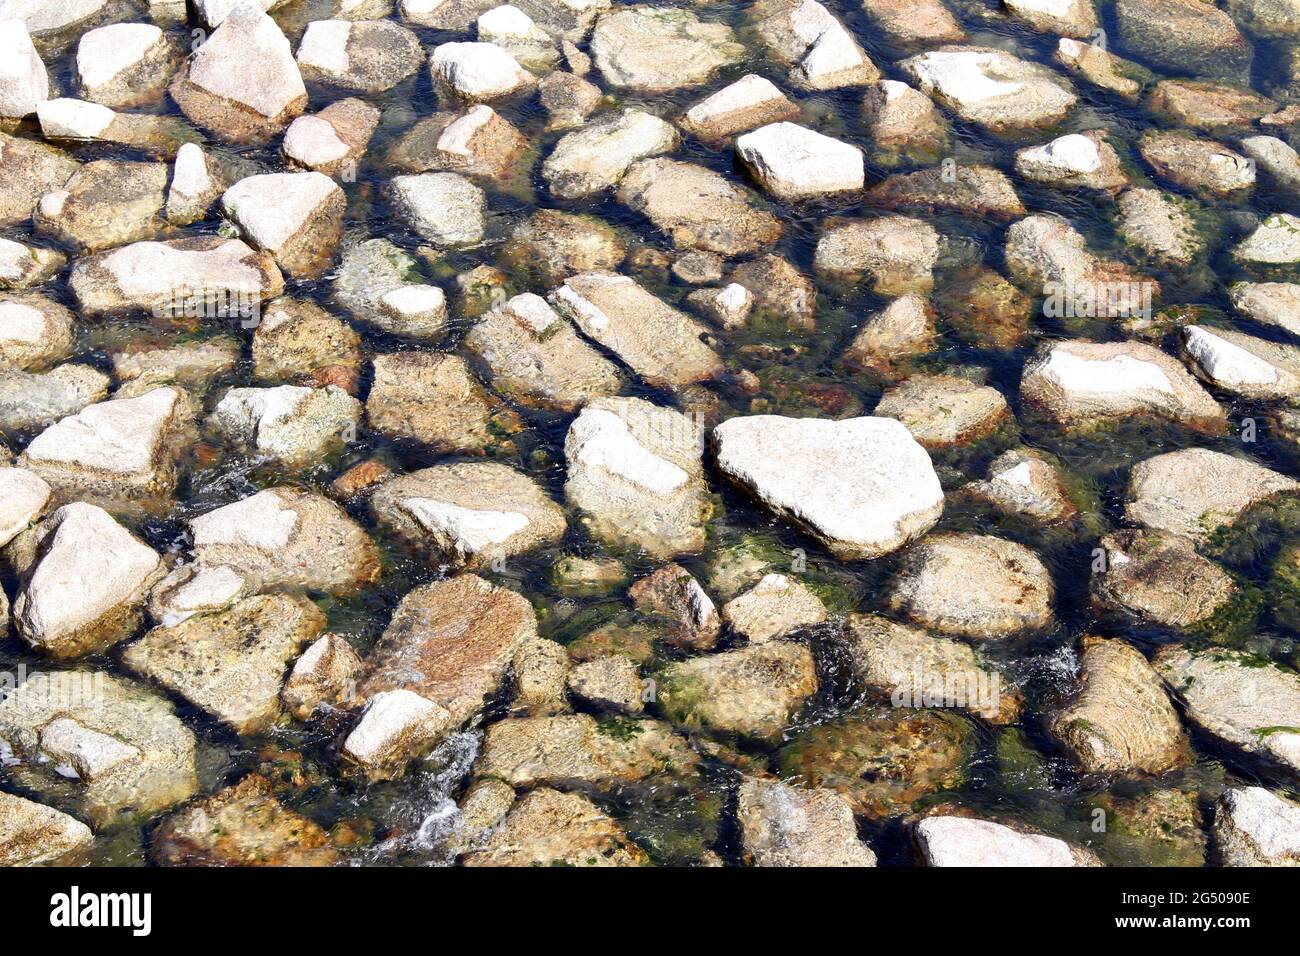 Kieselsteine unter Wasser - Luftaufnahme von Steinen in leerem, klarem Süßwasser Stockfoto